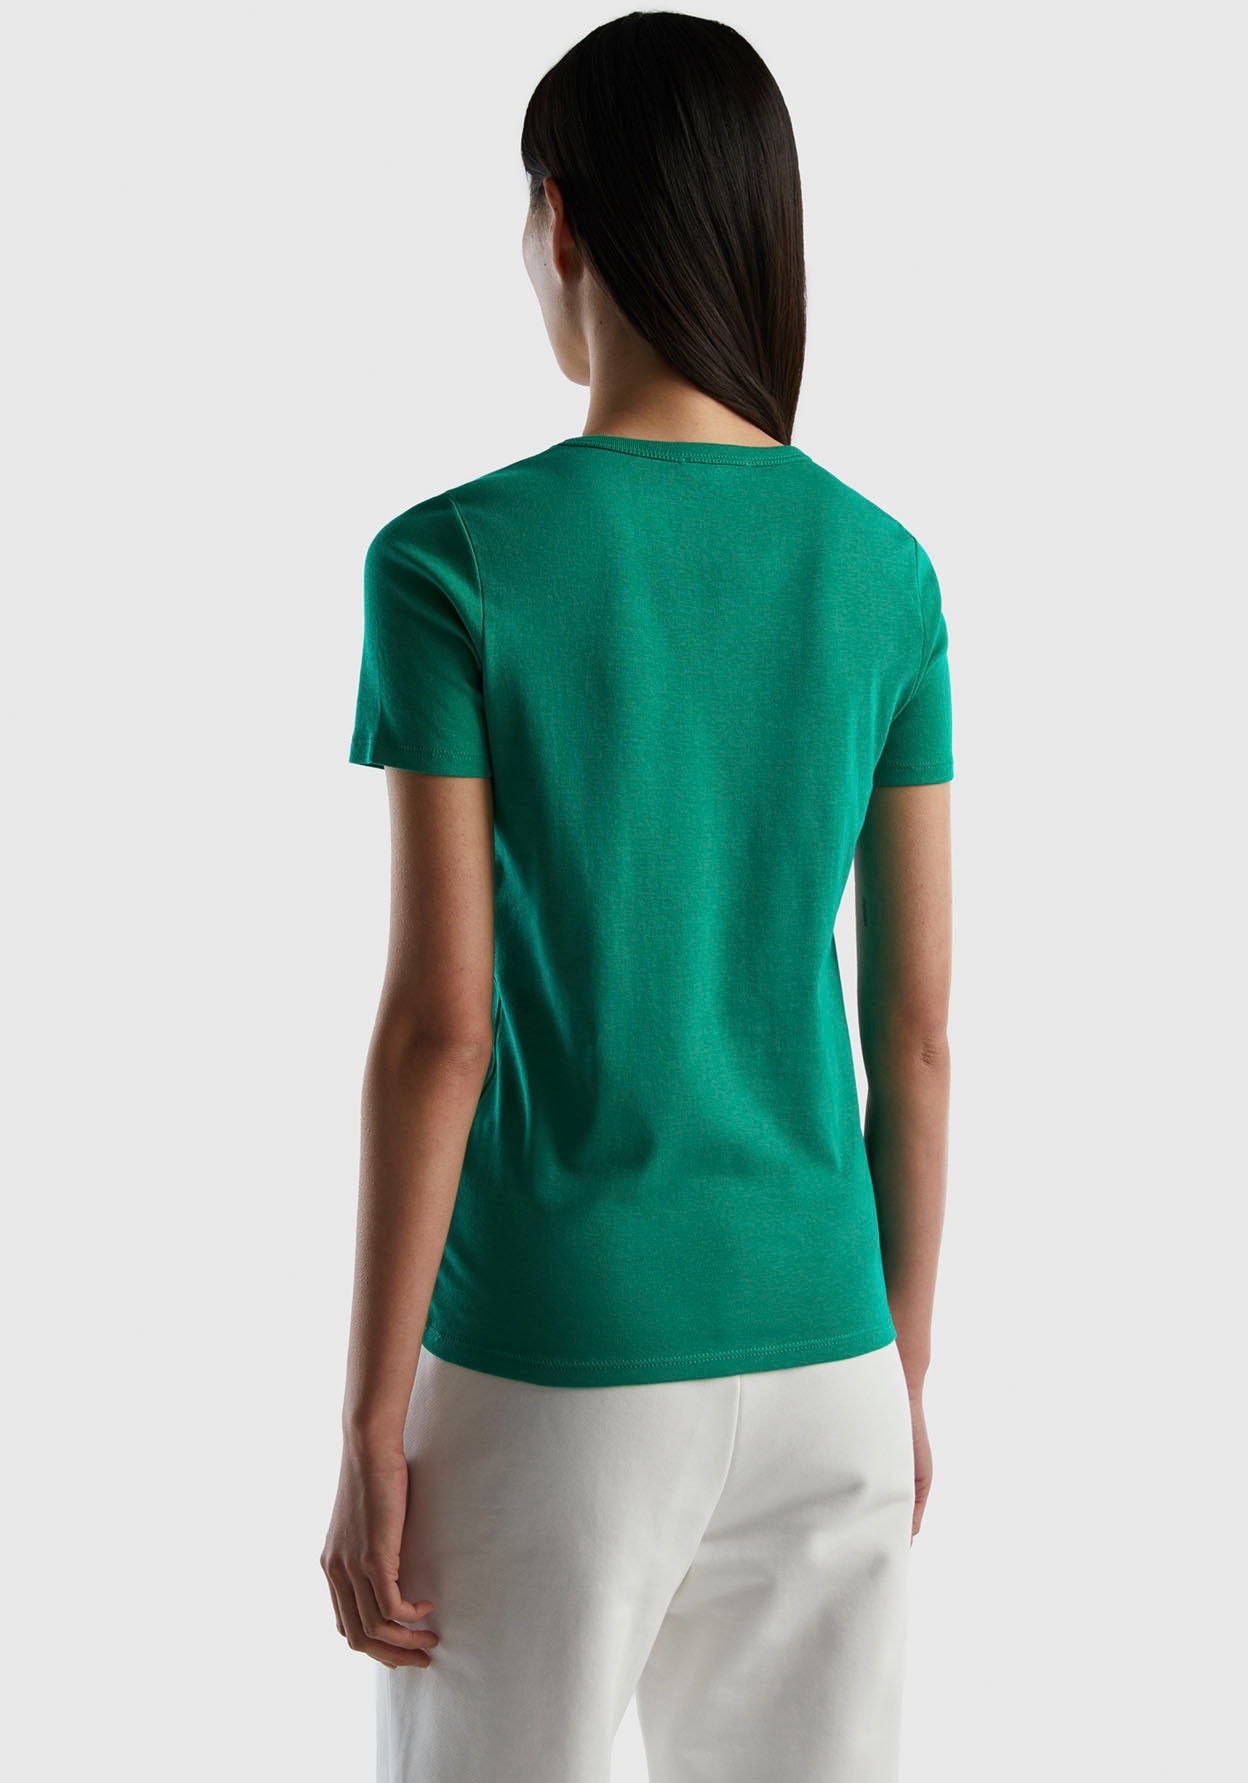 United Colors of Benetton vorn mit Label-Print kaufen glitzerndem T-Shirt, bequem